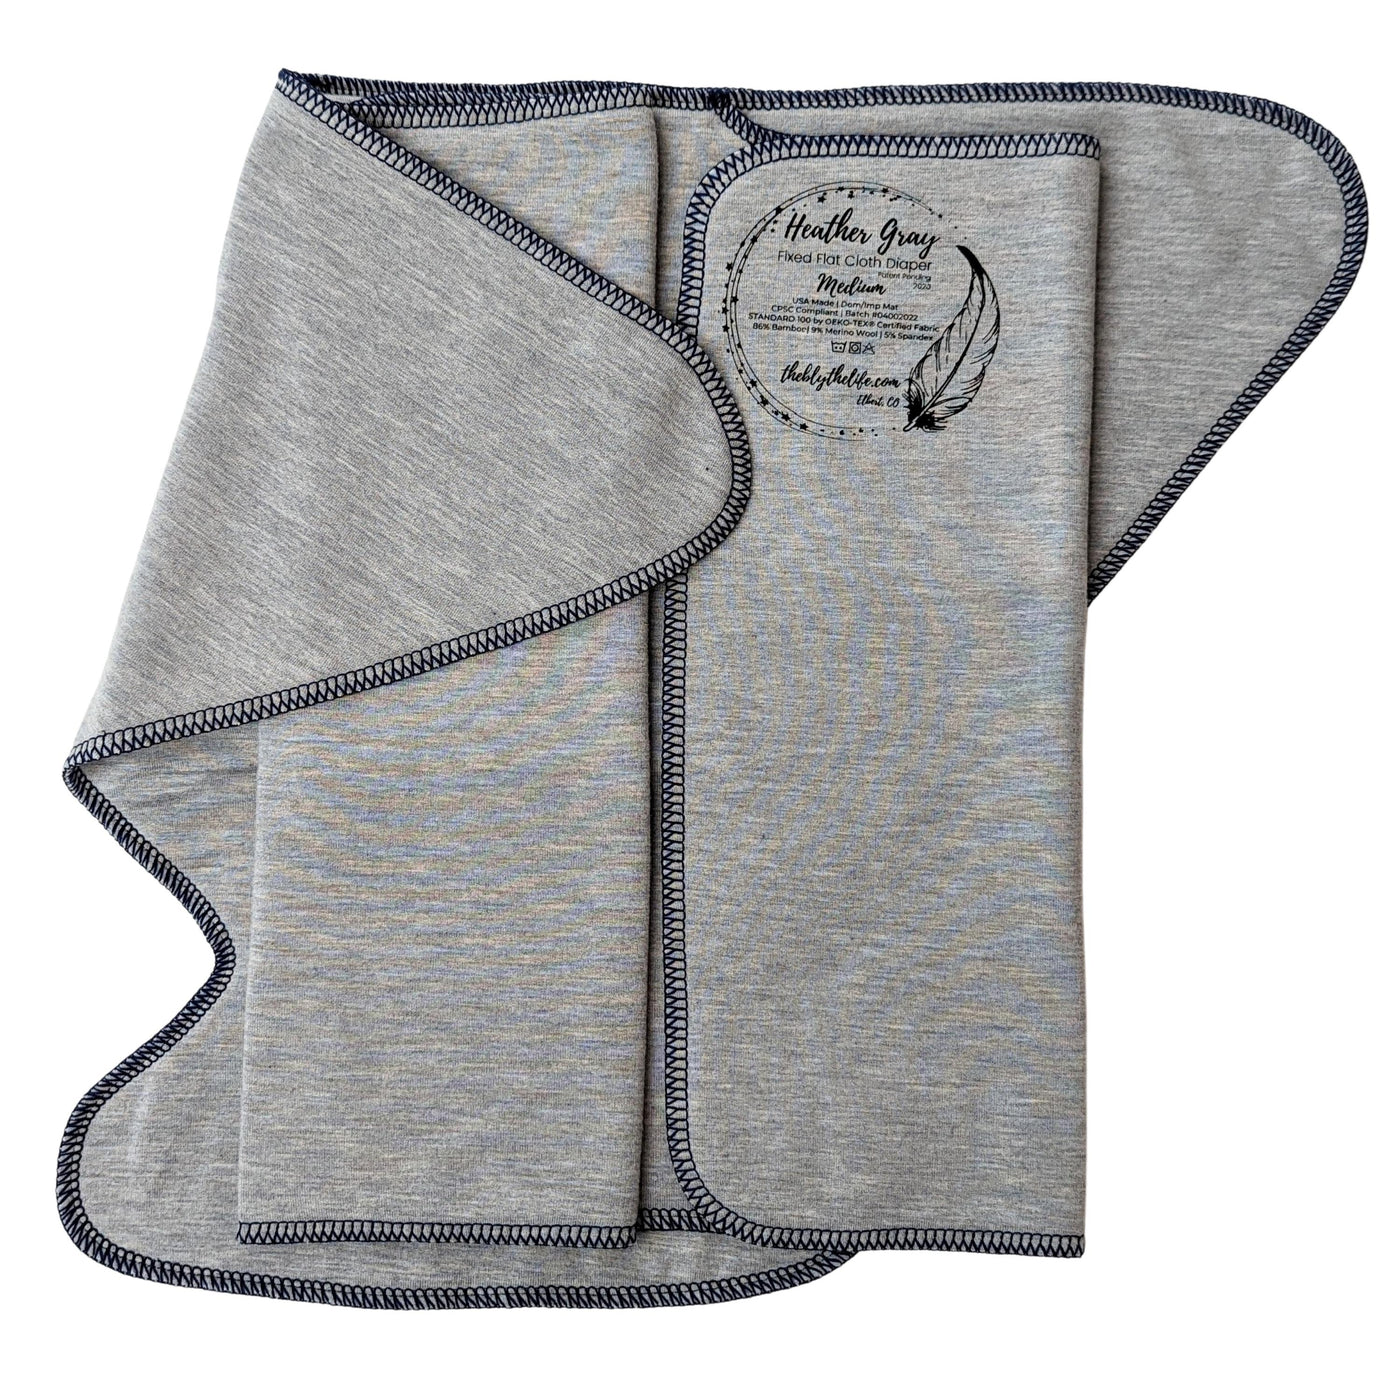 Fixed Flat Cloth Diaper©Winkelmann2020 | Bamboo Merino Wool | Heavy Wetter Absorbency | Heather Gray